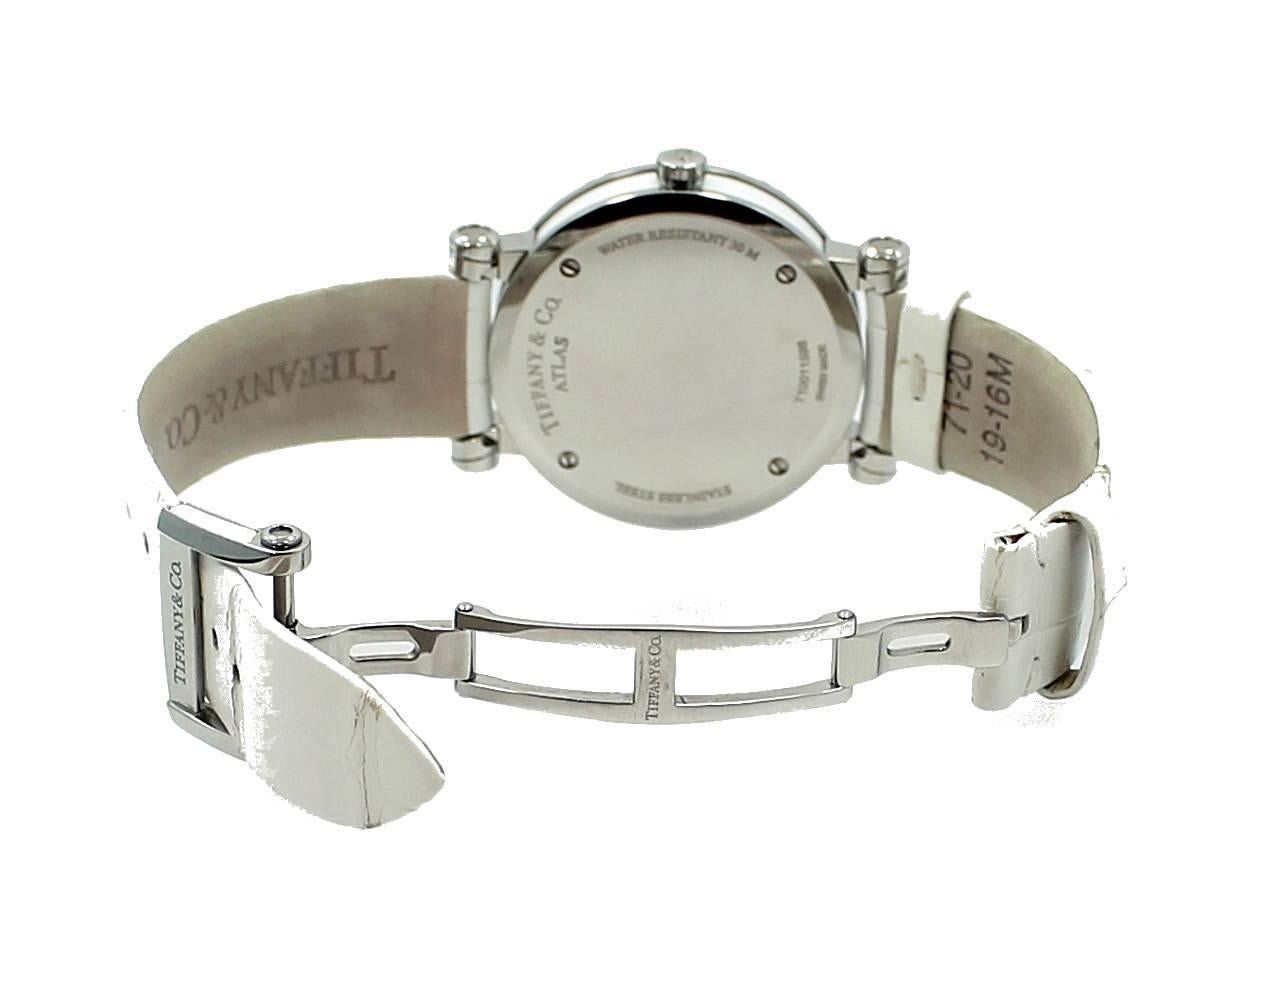 Tiffany & Co. Lady's Stainless Steel Atlas Quartz Wristwatch  2